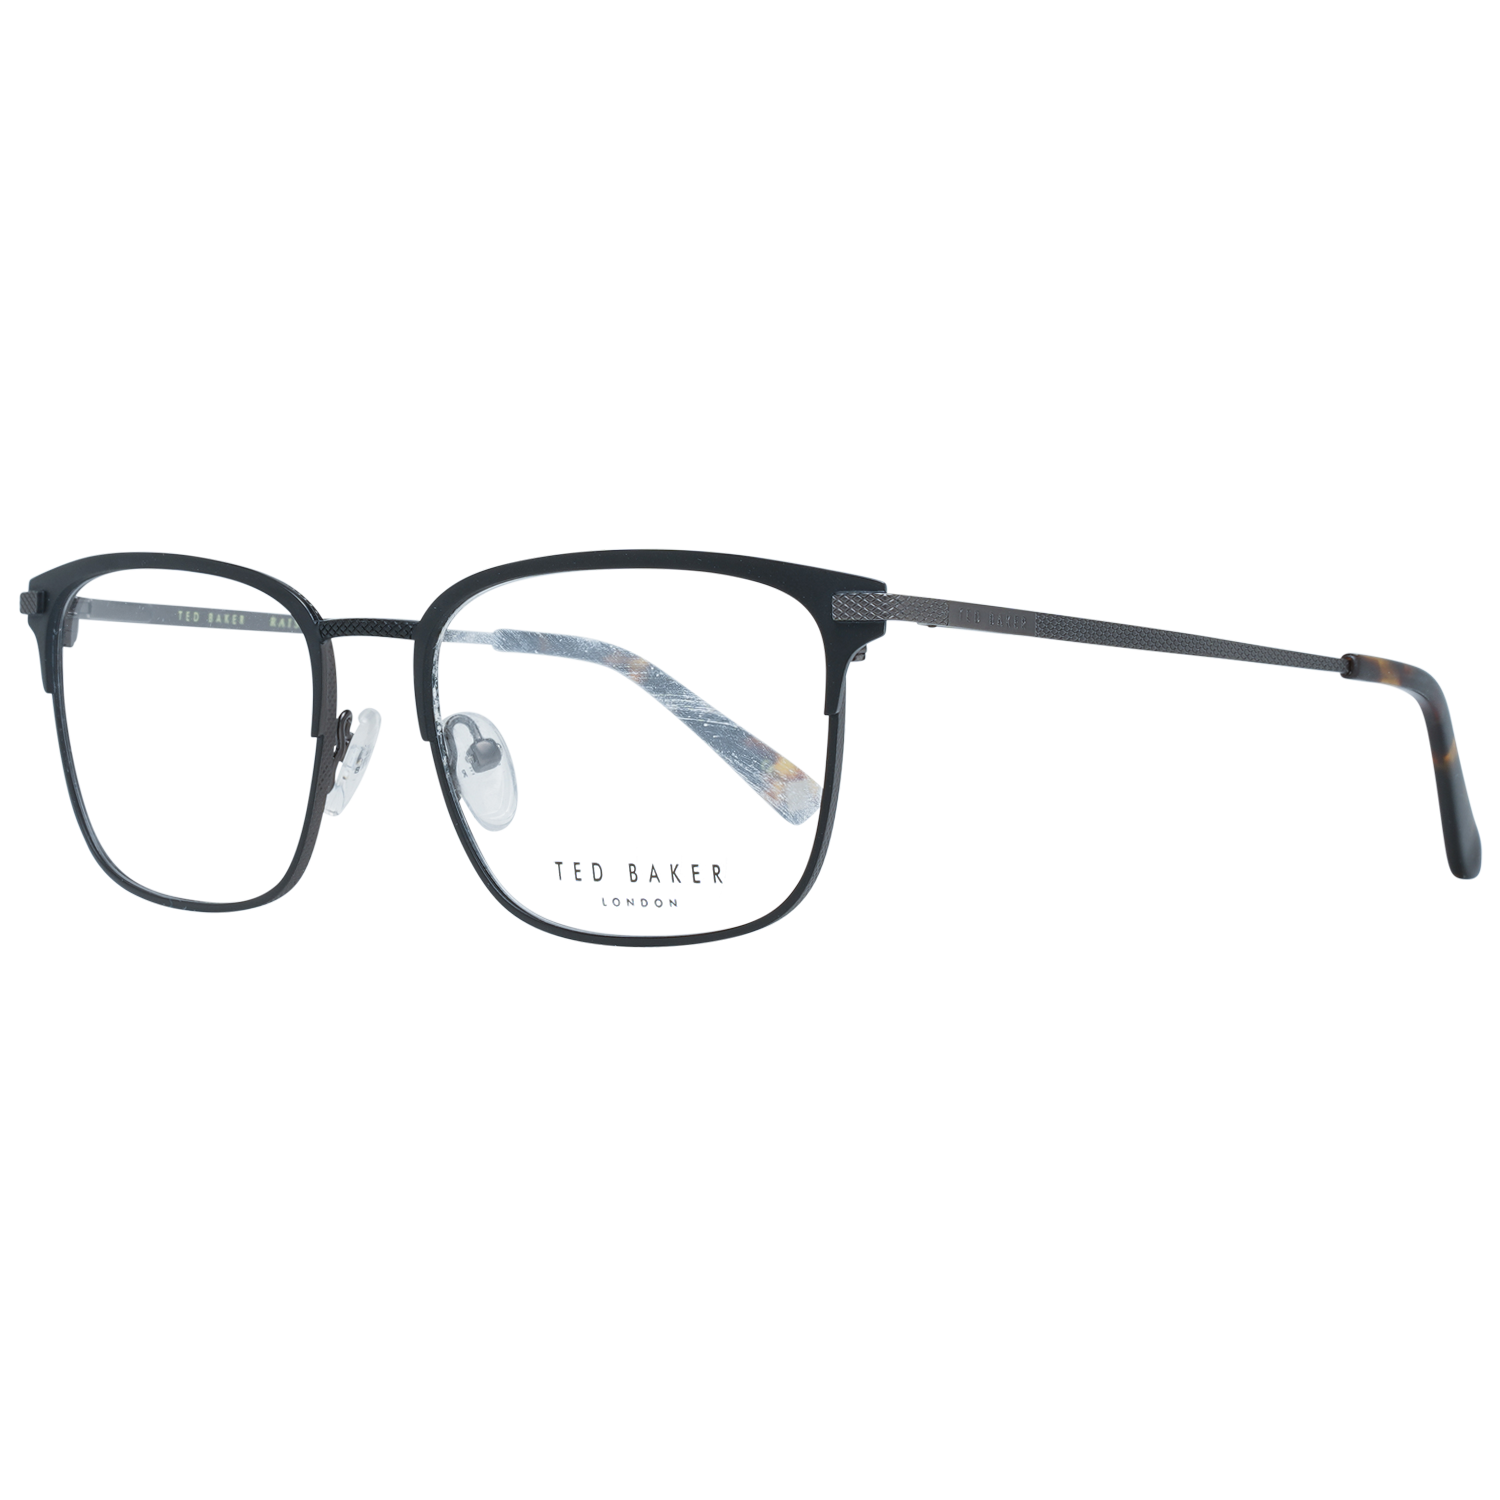 Ted Baker Frames Ted Baker Optical Frame Prescription Glasses TB4259 001 54 Daley Eyeglasses Eyewear UK USA Australia 